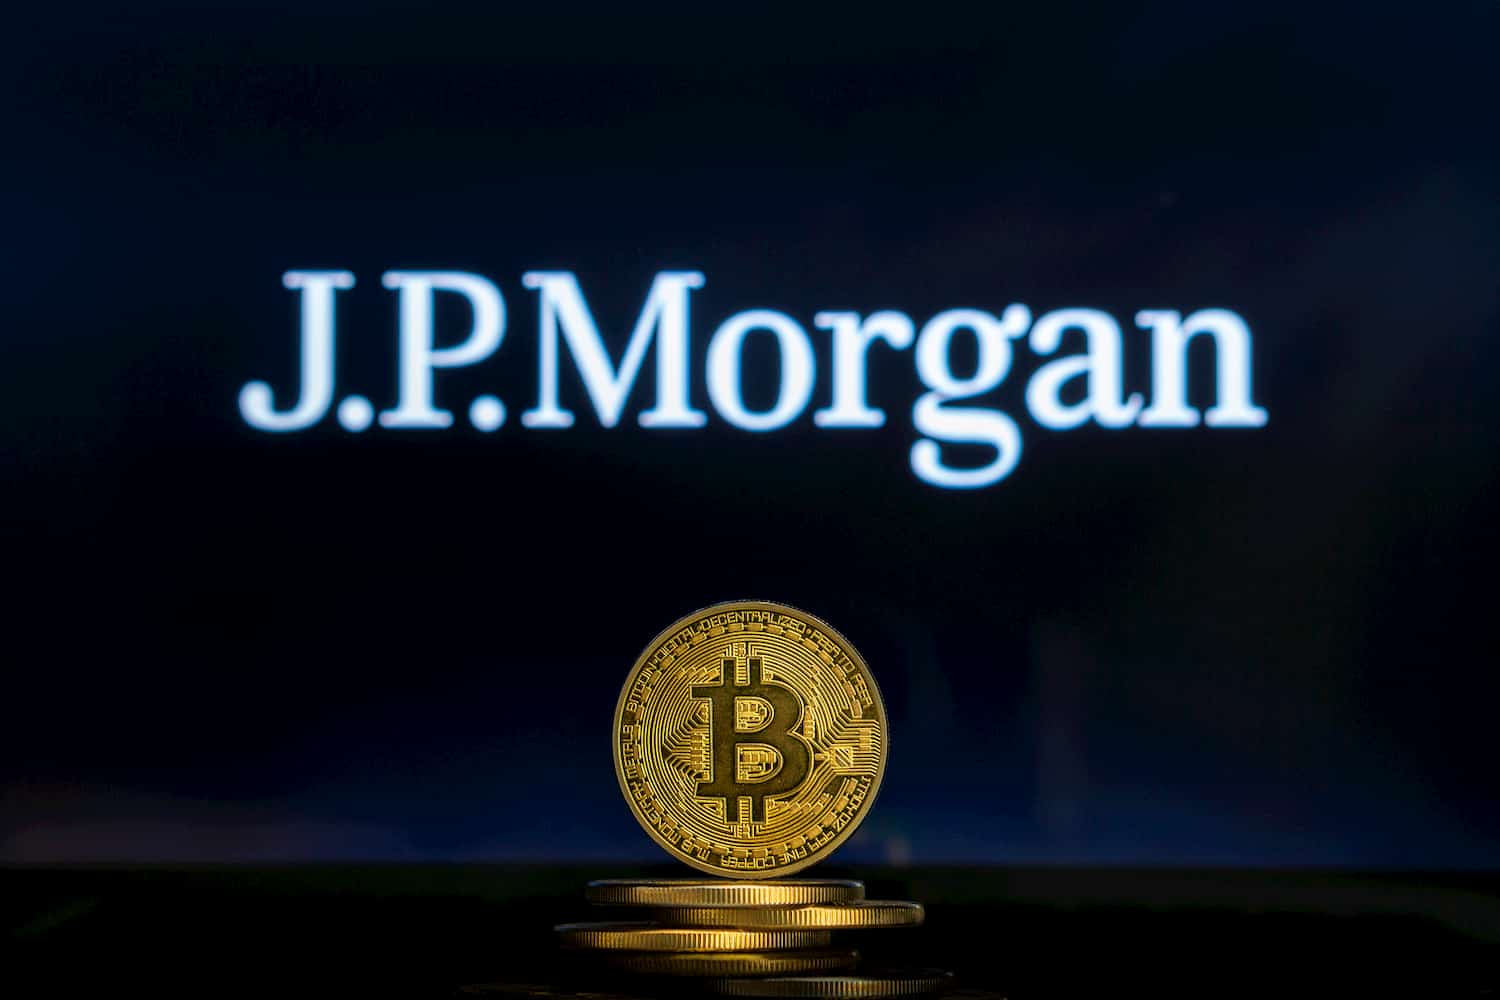 JPMorgan on Bitcoin